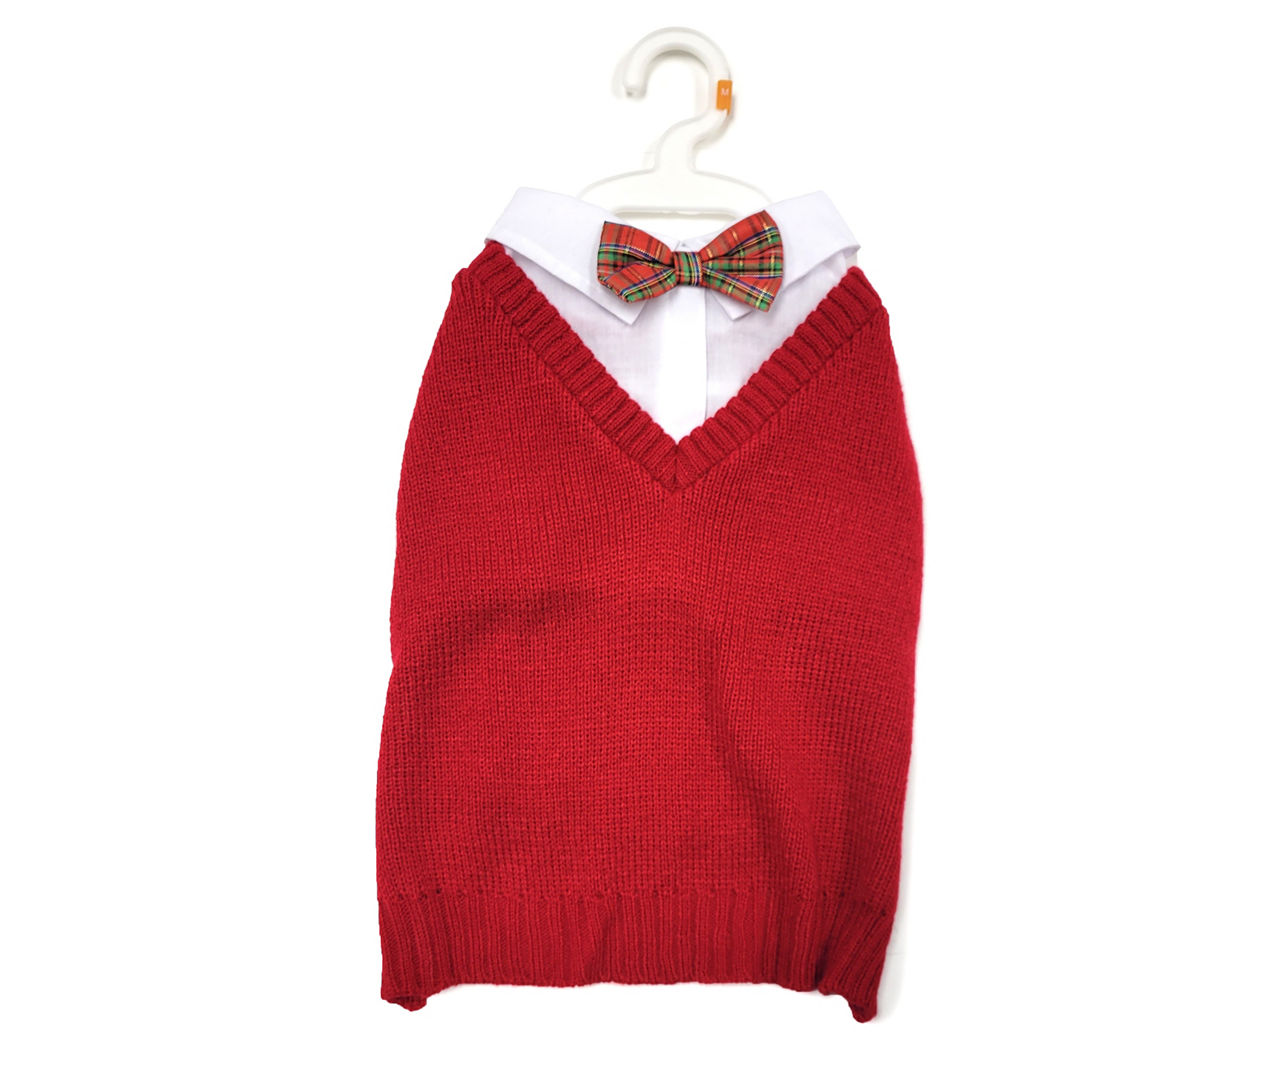 Pet X-Large Red Plaid Bow Tie Sweater Vest